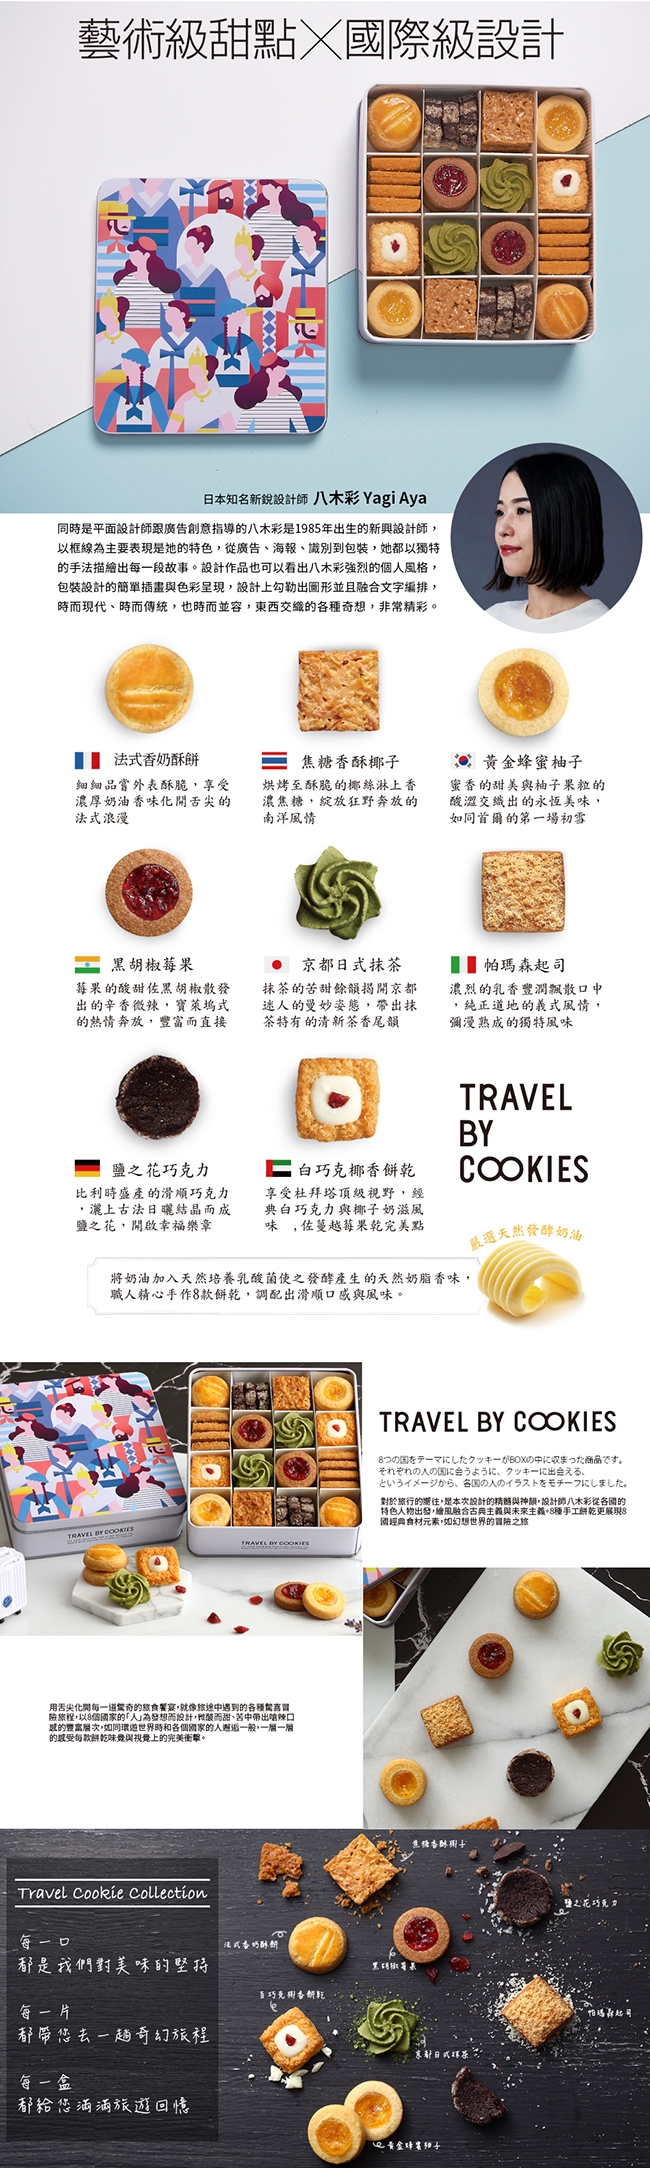 金格x日本新銳設計師八木彩 旅人彩食鐵盒手工餅乾禮盒